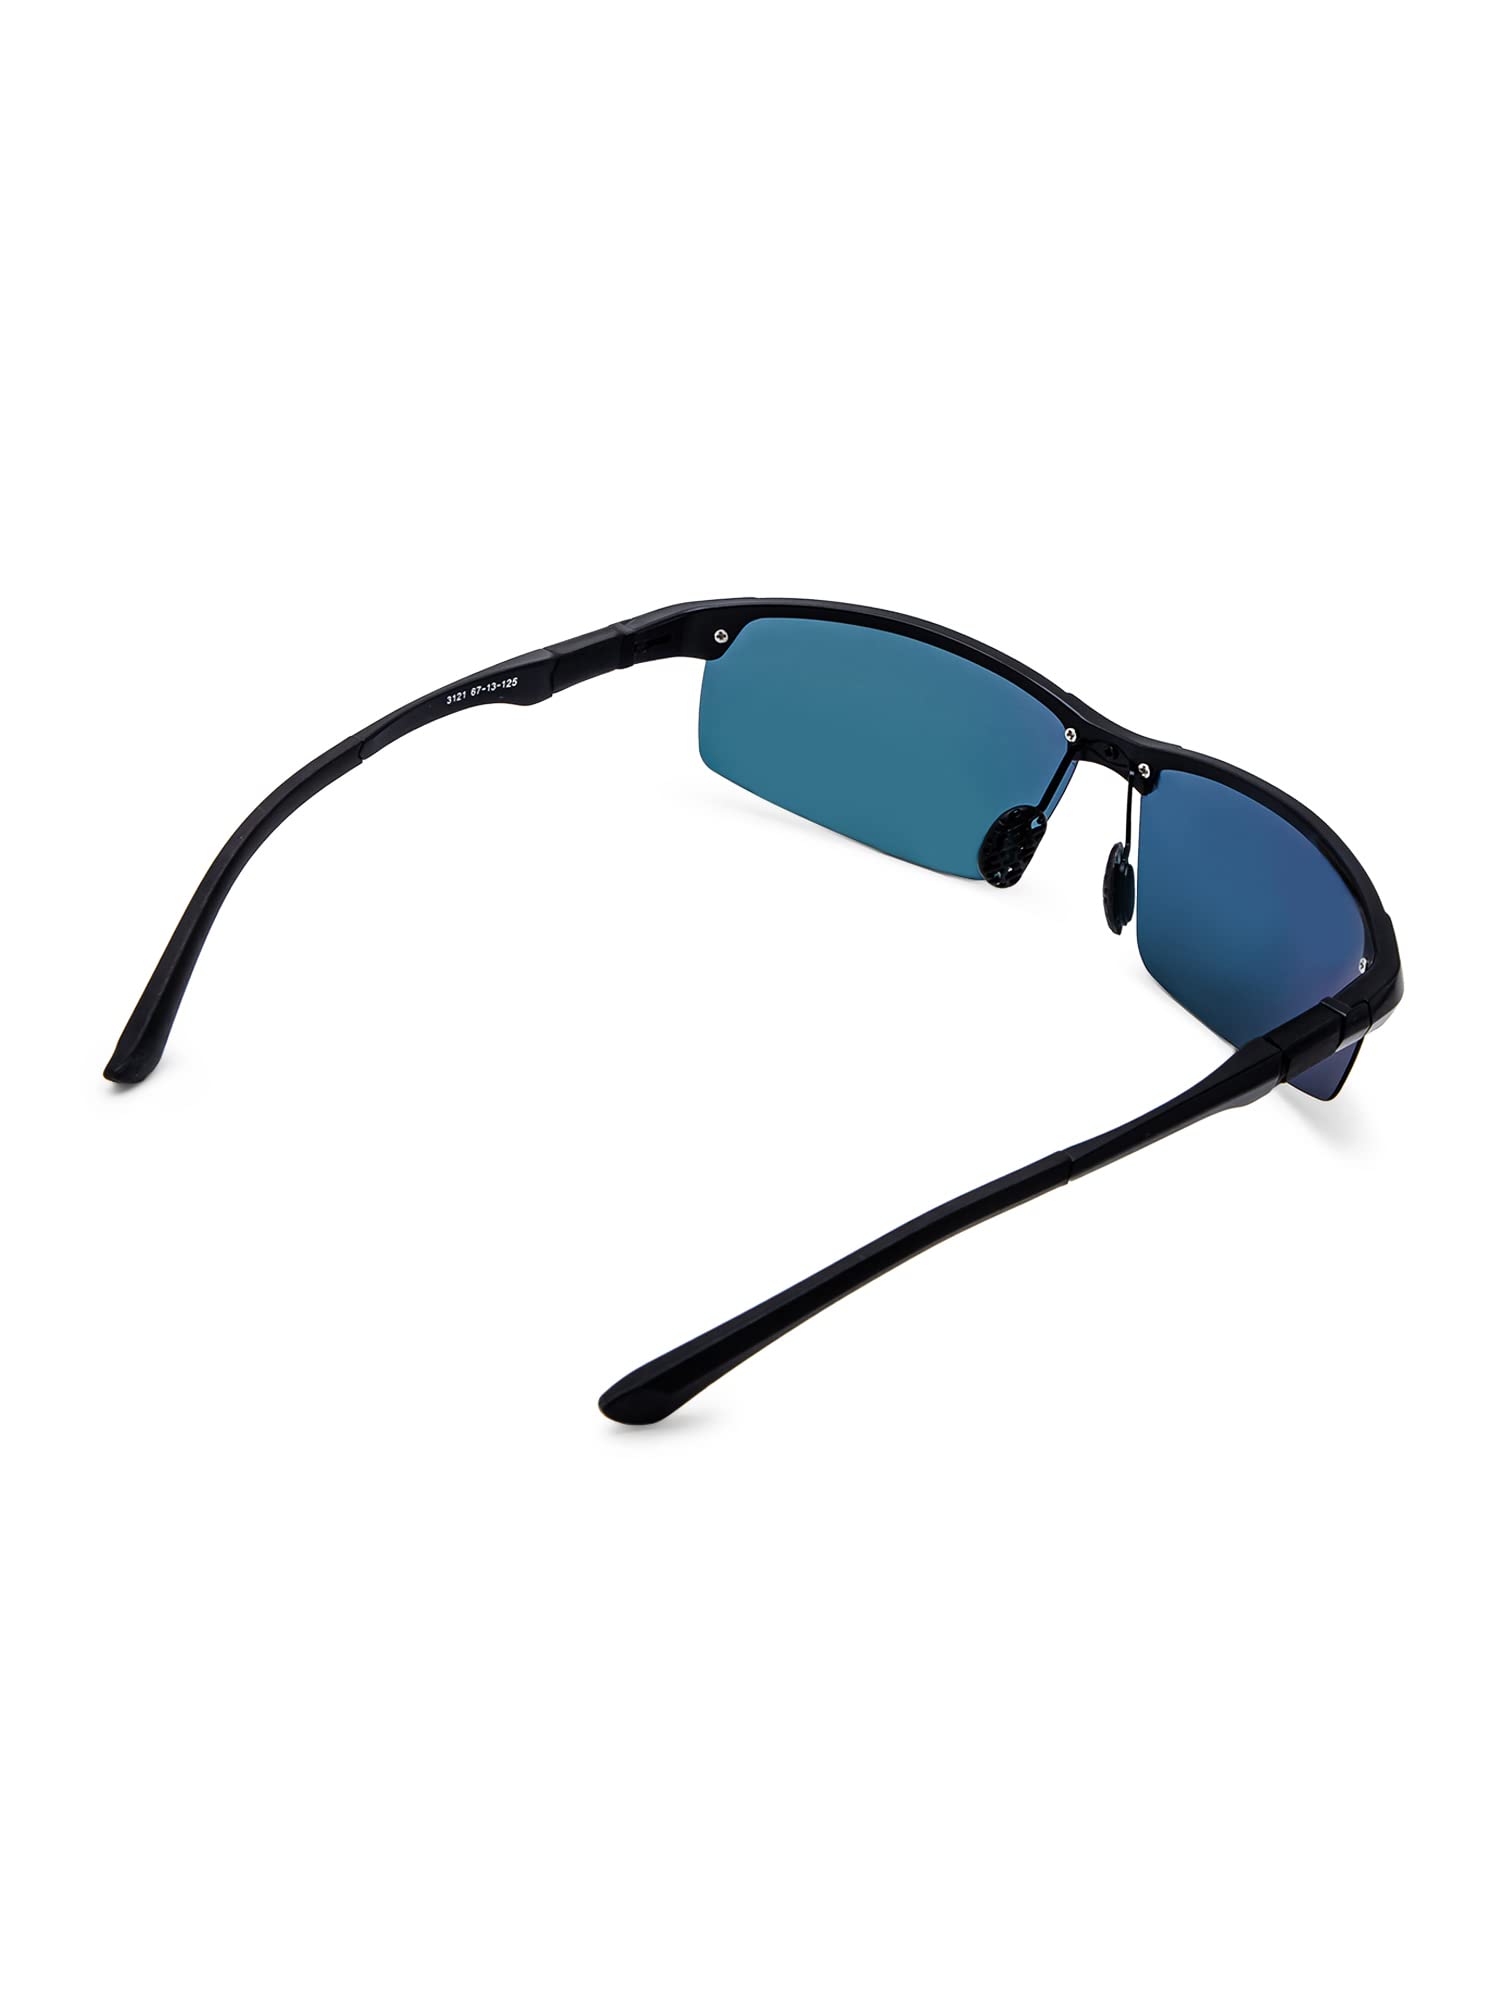 Intellilens Sports Sunglasses For Men Black - Pack of 1